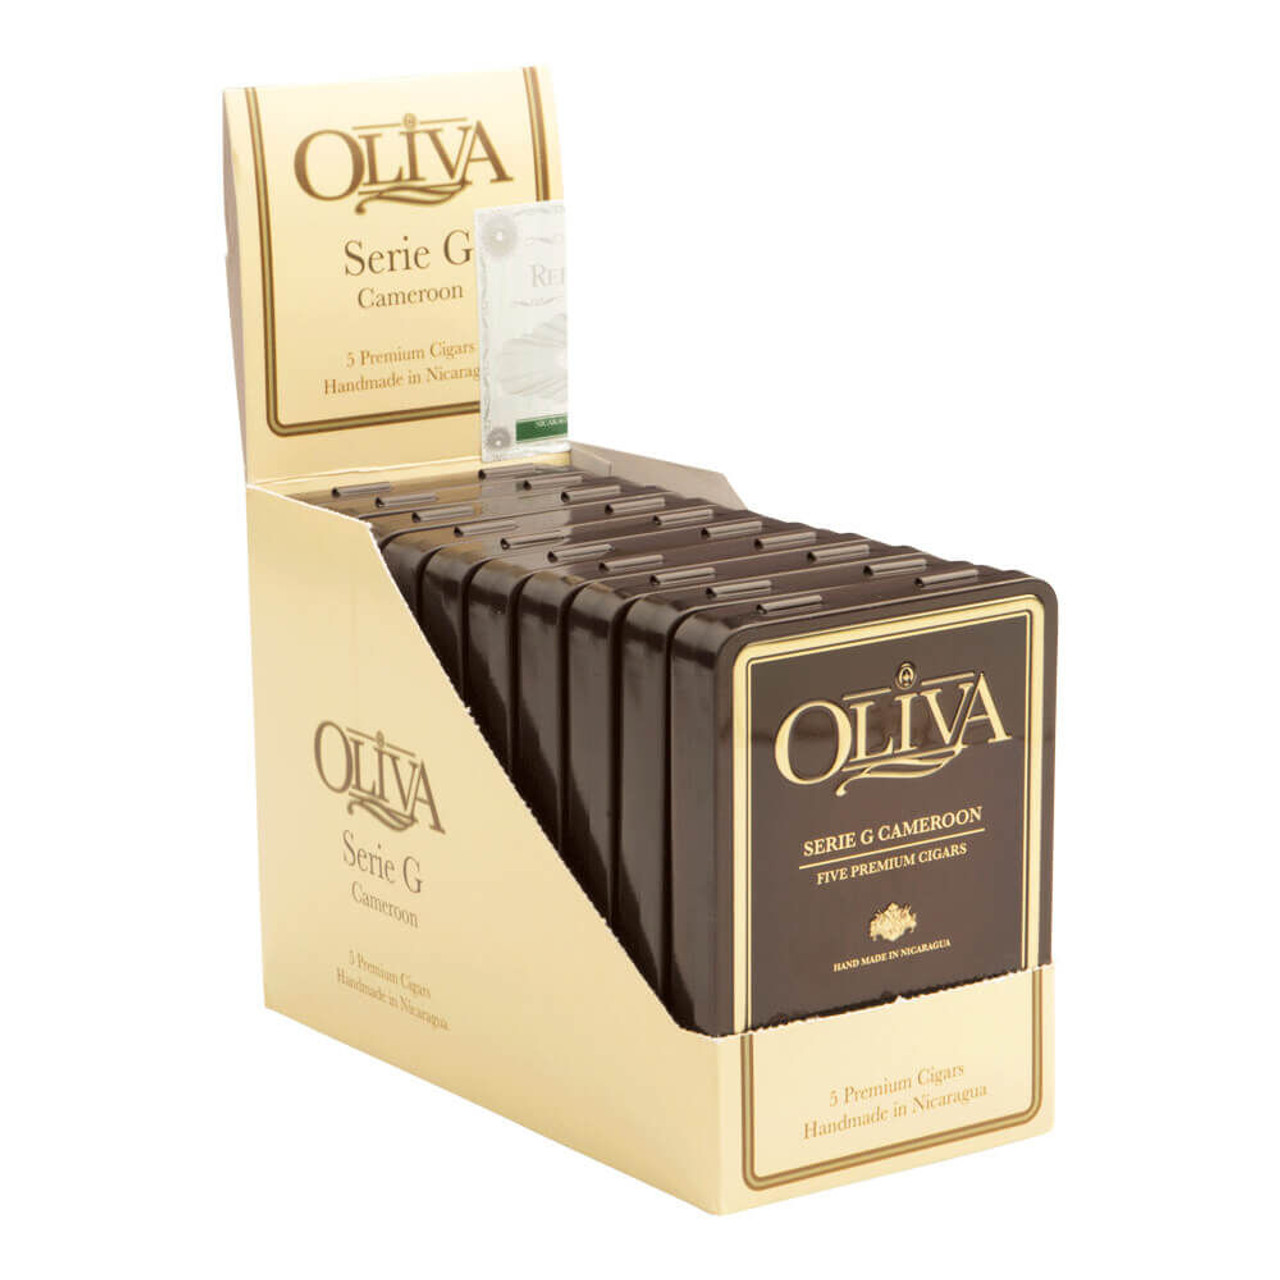 Oliva Serie G Cigarillo "G" Cigars - 4 x 38 (10 Packs of 5 (50 total)) Open